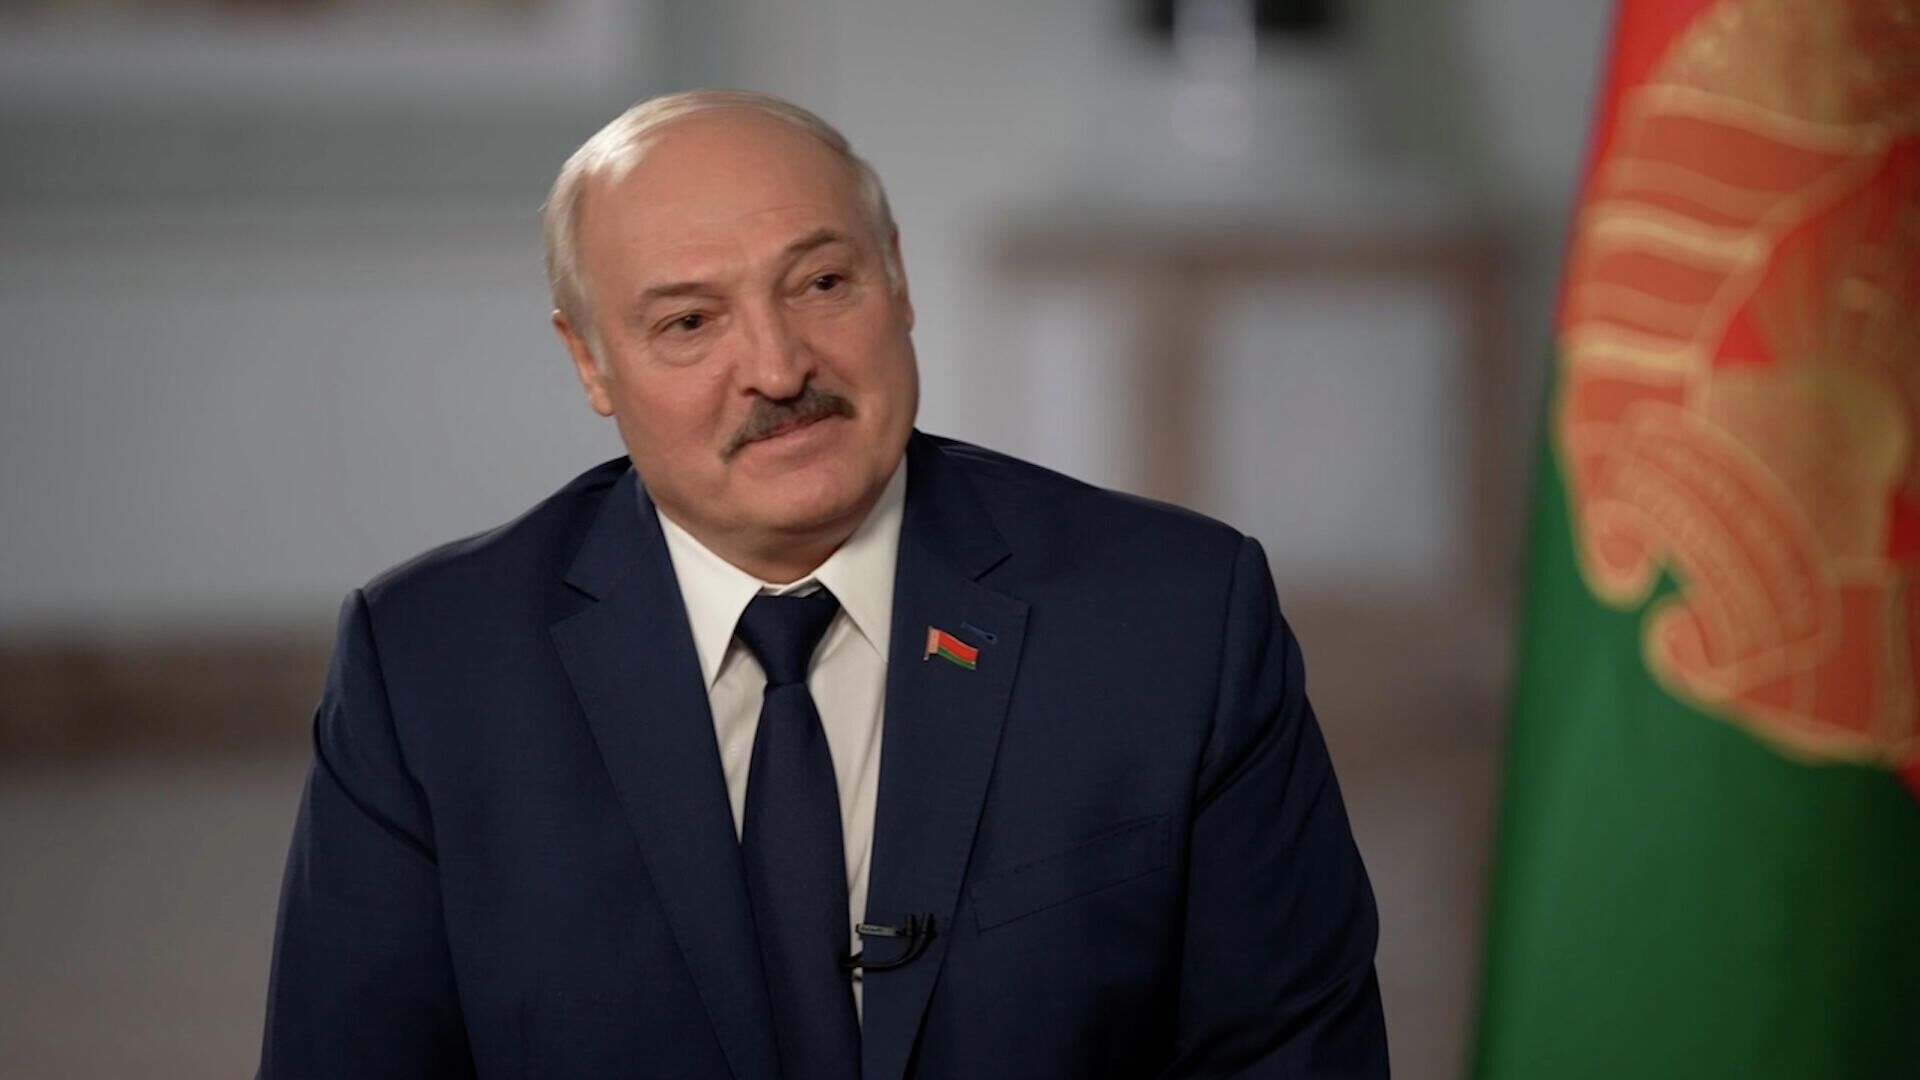 “Честно, не знаю” – Лукашенко о своем участии в следующих выборах президента Белоруссии  - РИА Новости, 1920, 02.12.2021